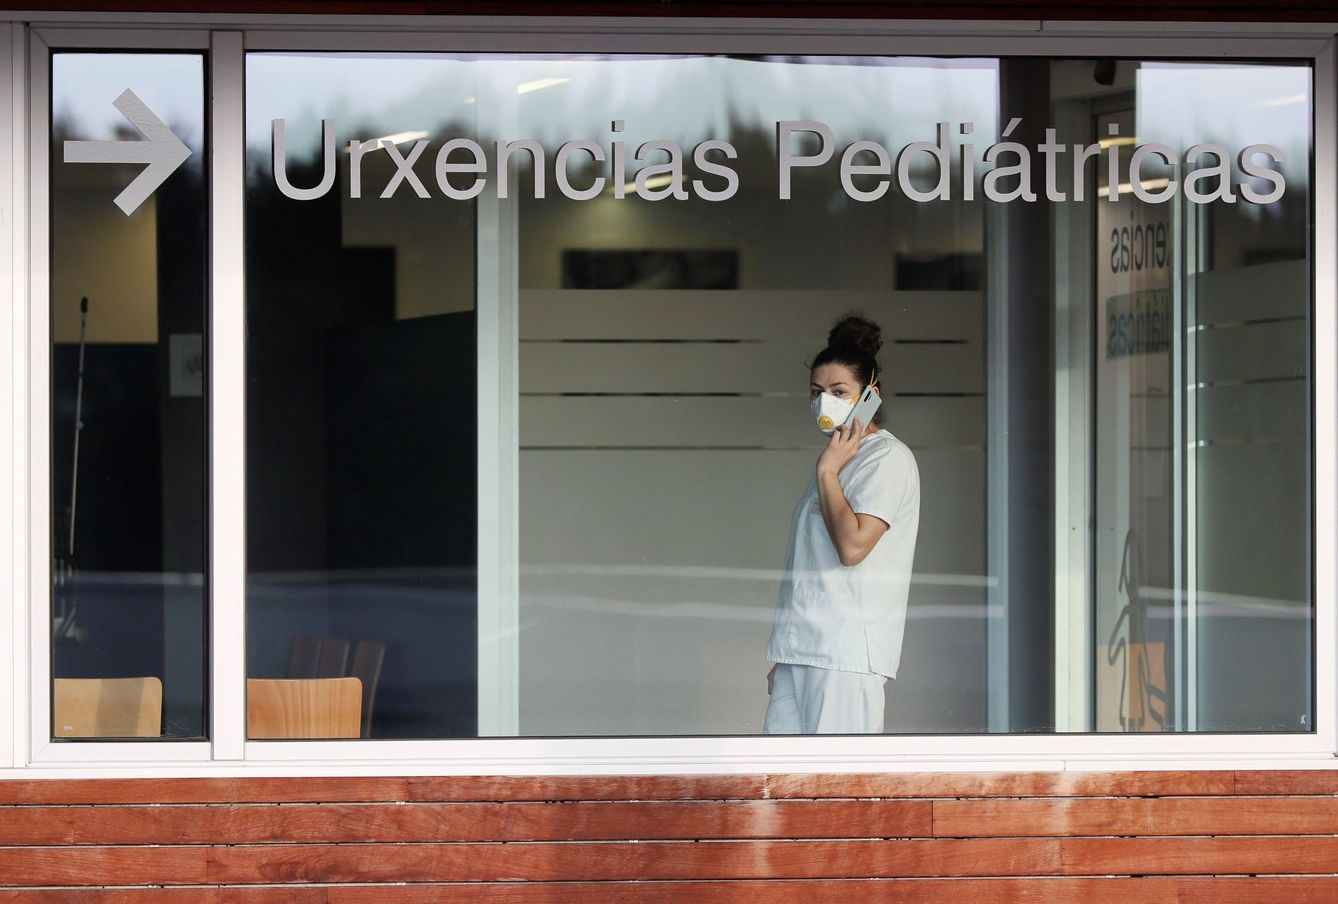 Una enfermera de urgencias pediátricas en un hospital de Galicia. (EFE)